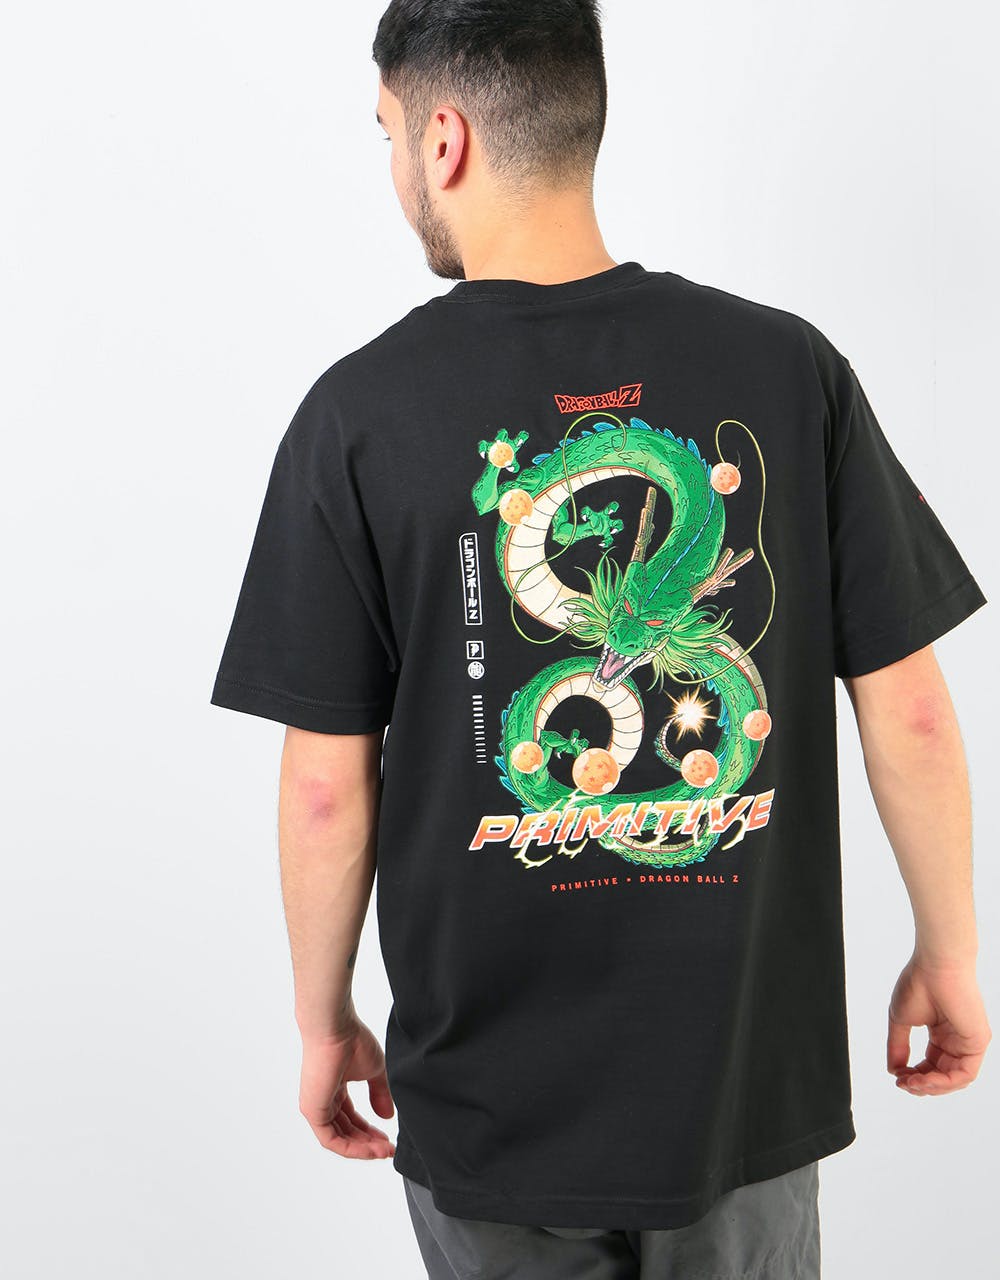 Primitive x Dragon Ball Z Shenron Dirty P T-Shirt - Black